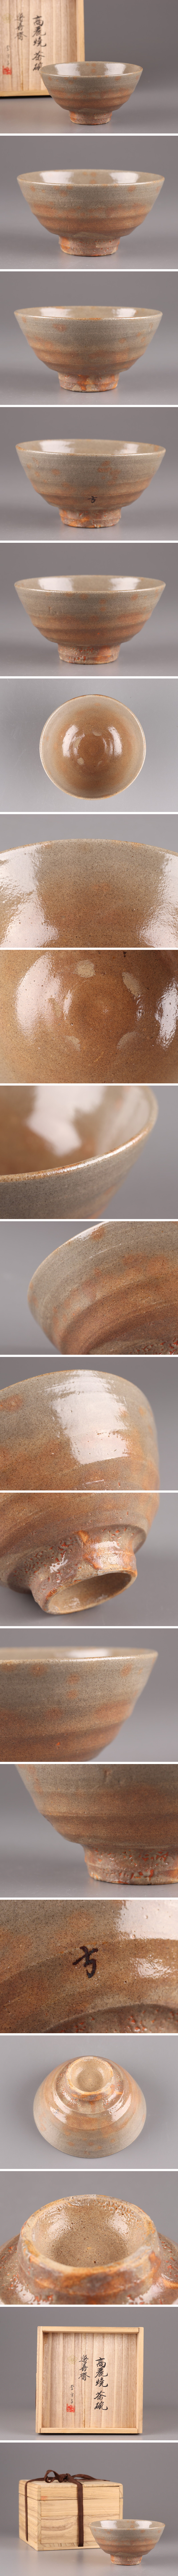 特注品古美術 朝鮮古陶磁器 李方子 高麗焼 茶碗 共箱 時代物 極上品 初だし品 4013 高麗